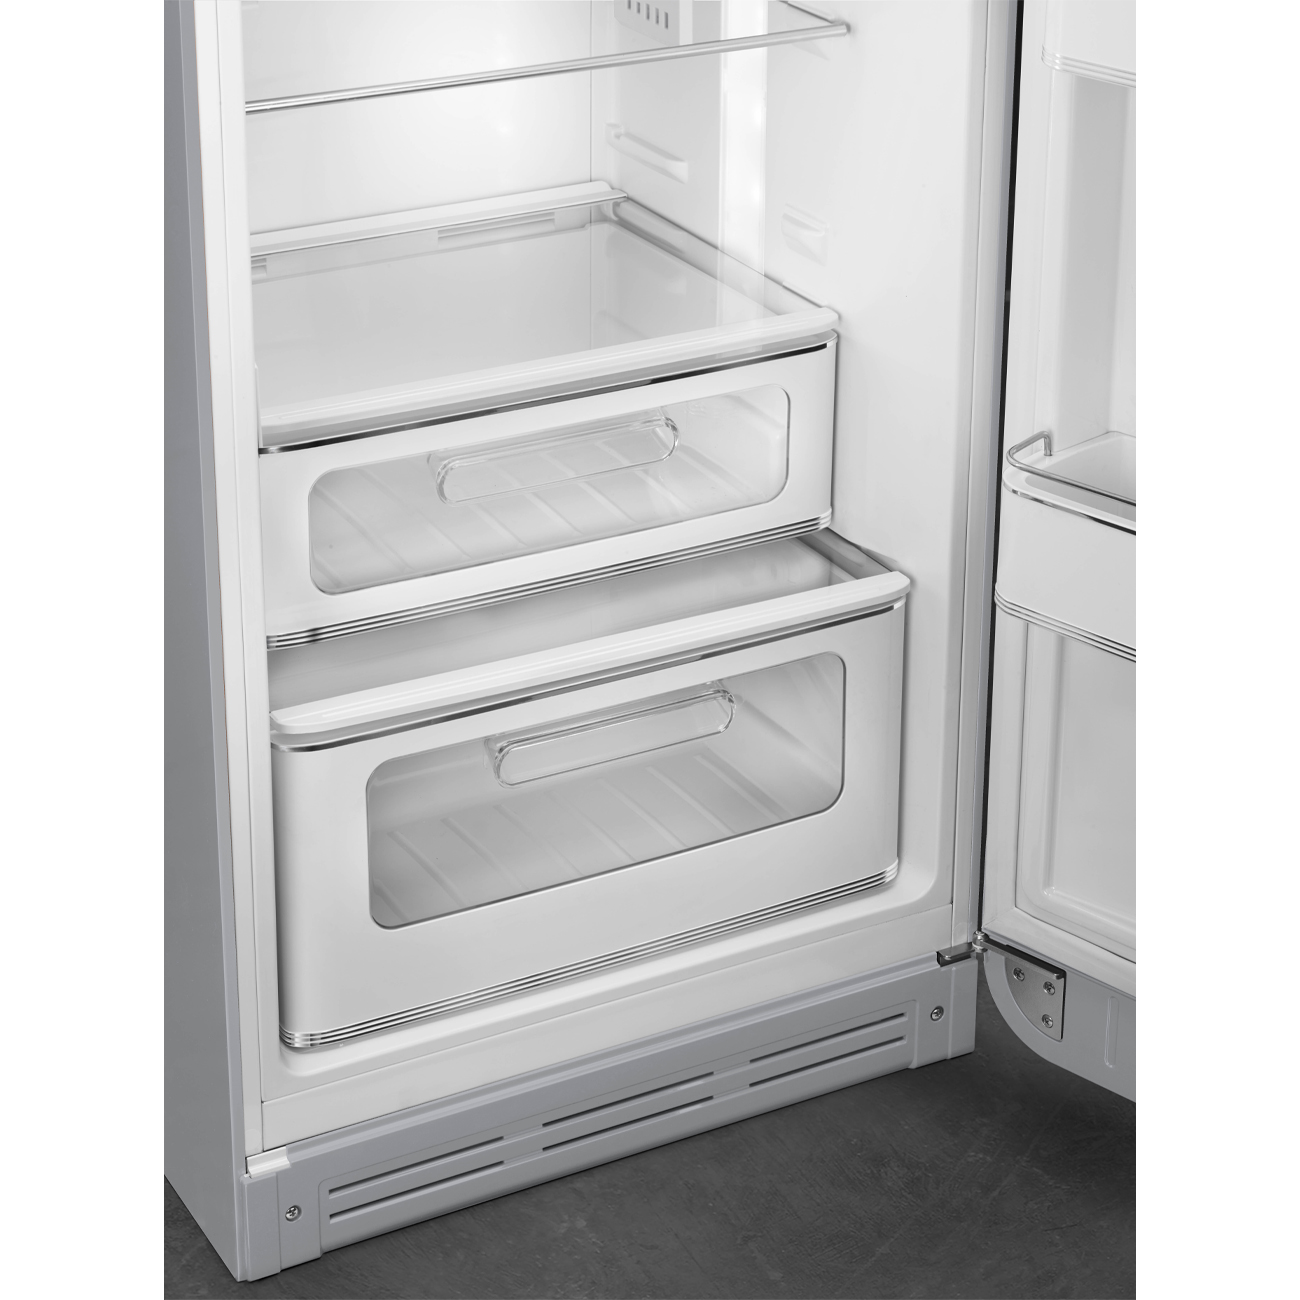 Silver refrigerator - Smeg_8